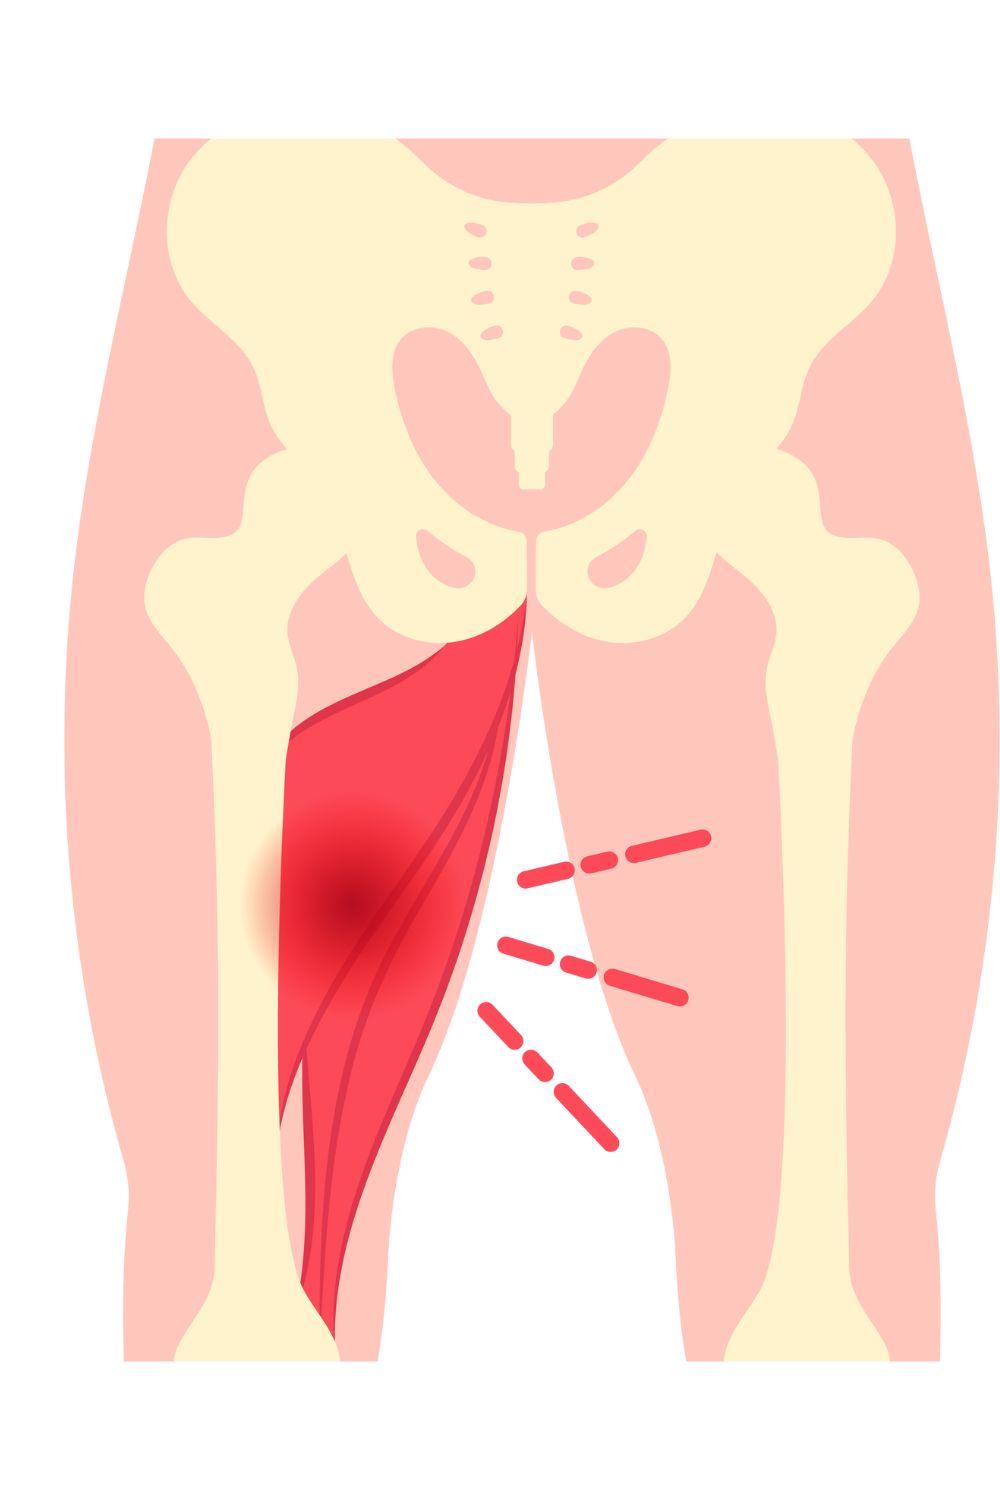 Inner thigh/groin pain